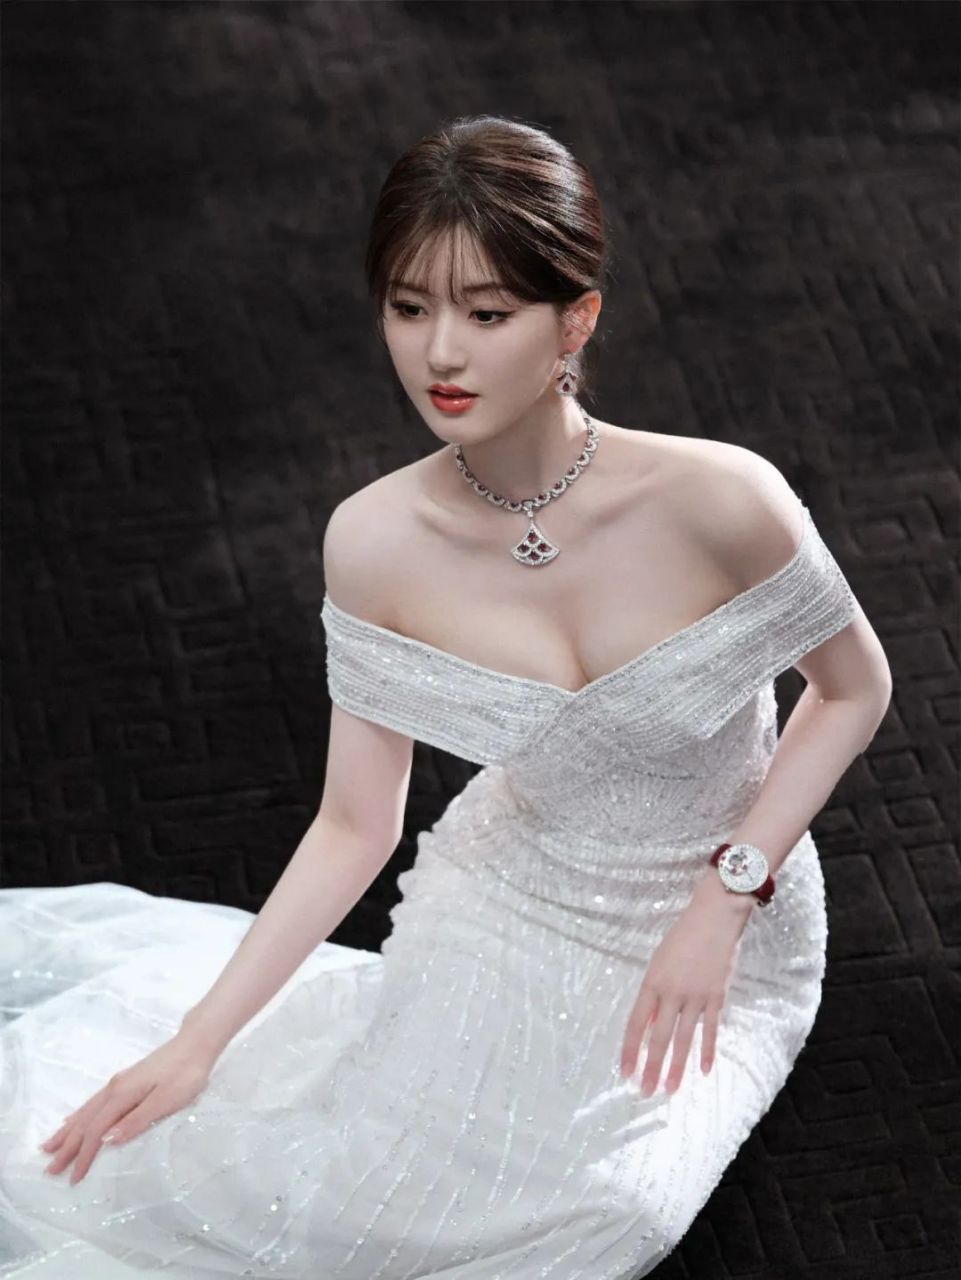 赵露思受邀参加品牌活动,身着一条高贵大气的白色长裙,搭配着闪耀的